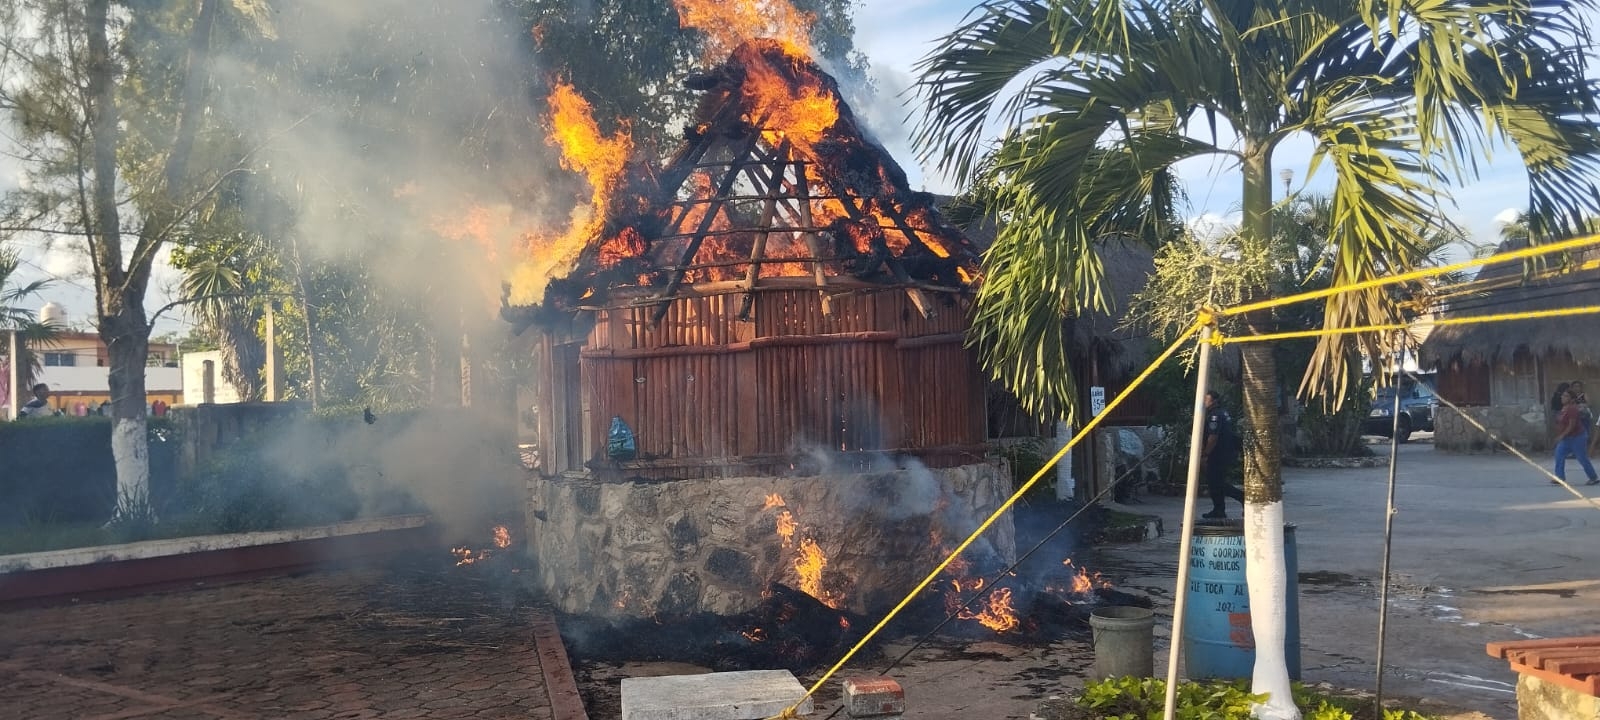 Se incendia una palapa en el parador turístico de Kantunilkín: VIDEO